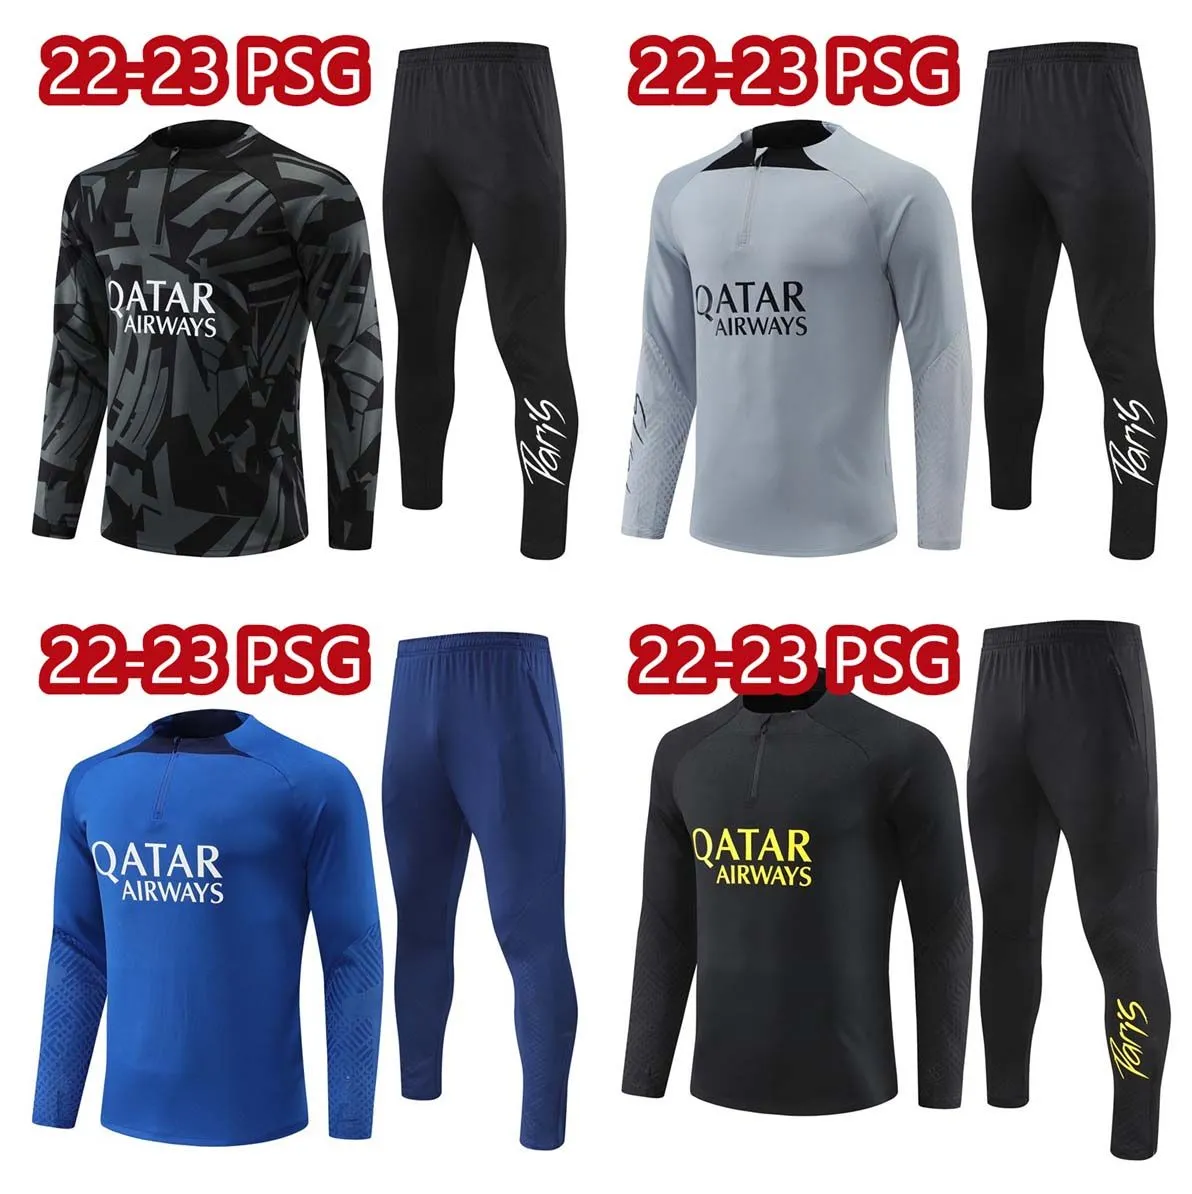 2223 PsGg Survetement Chandal Soccer Sets Mbappe Survêtements Costume d'entraînement Maillot Jersey Jacket Kit 2023 Messis Top Qualité Hommes et Enfants Jogging